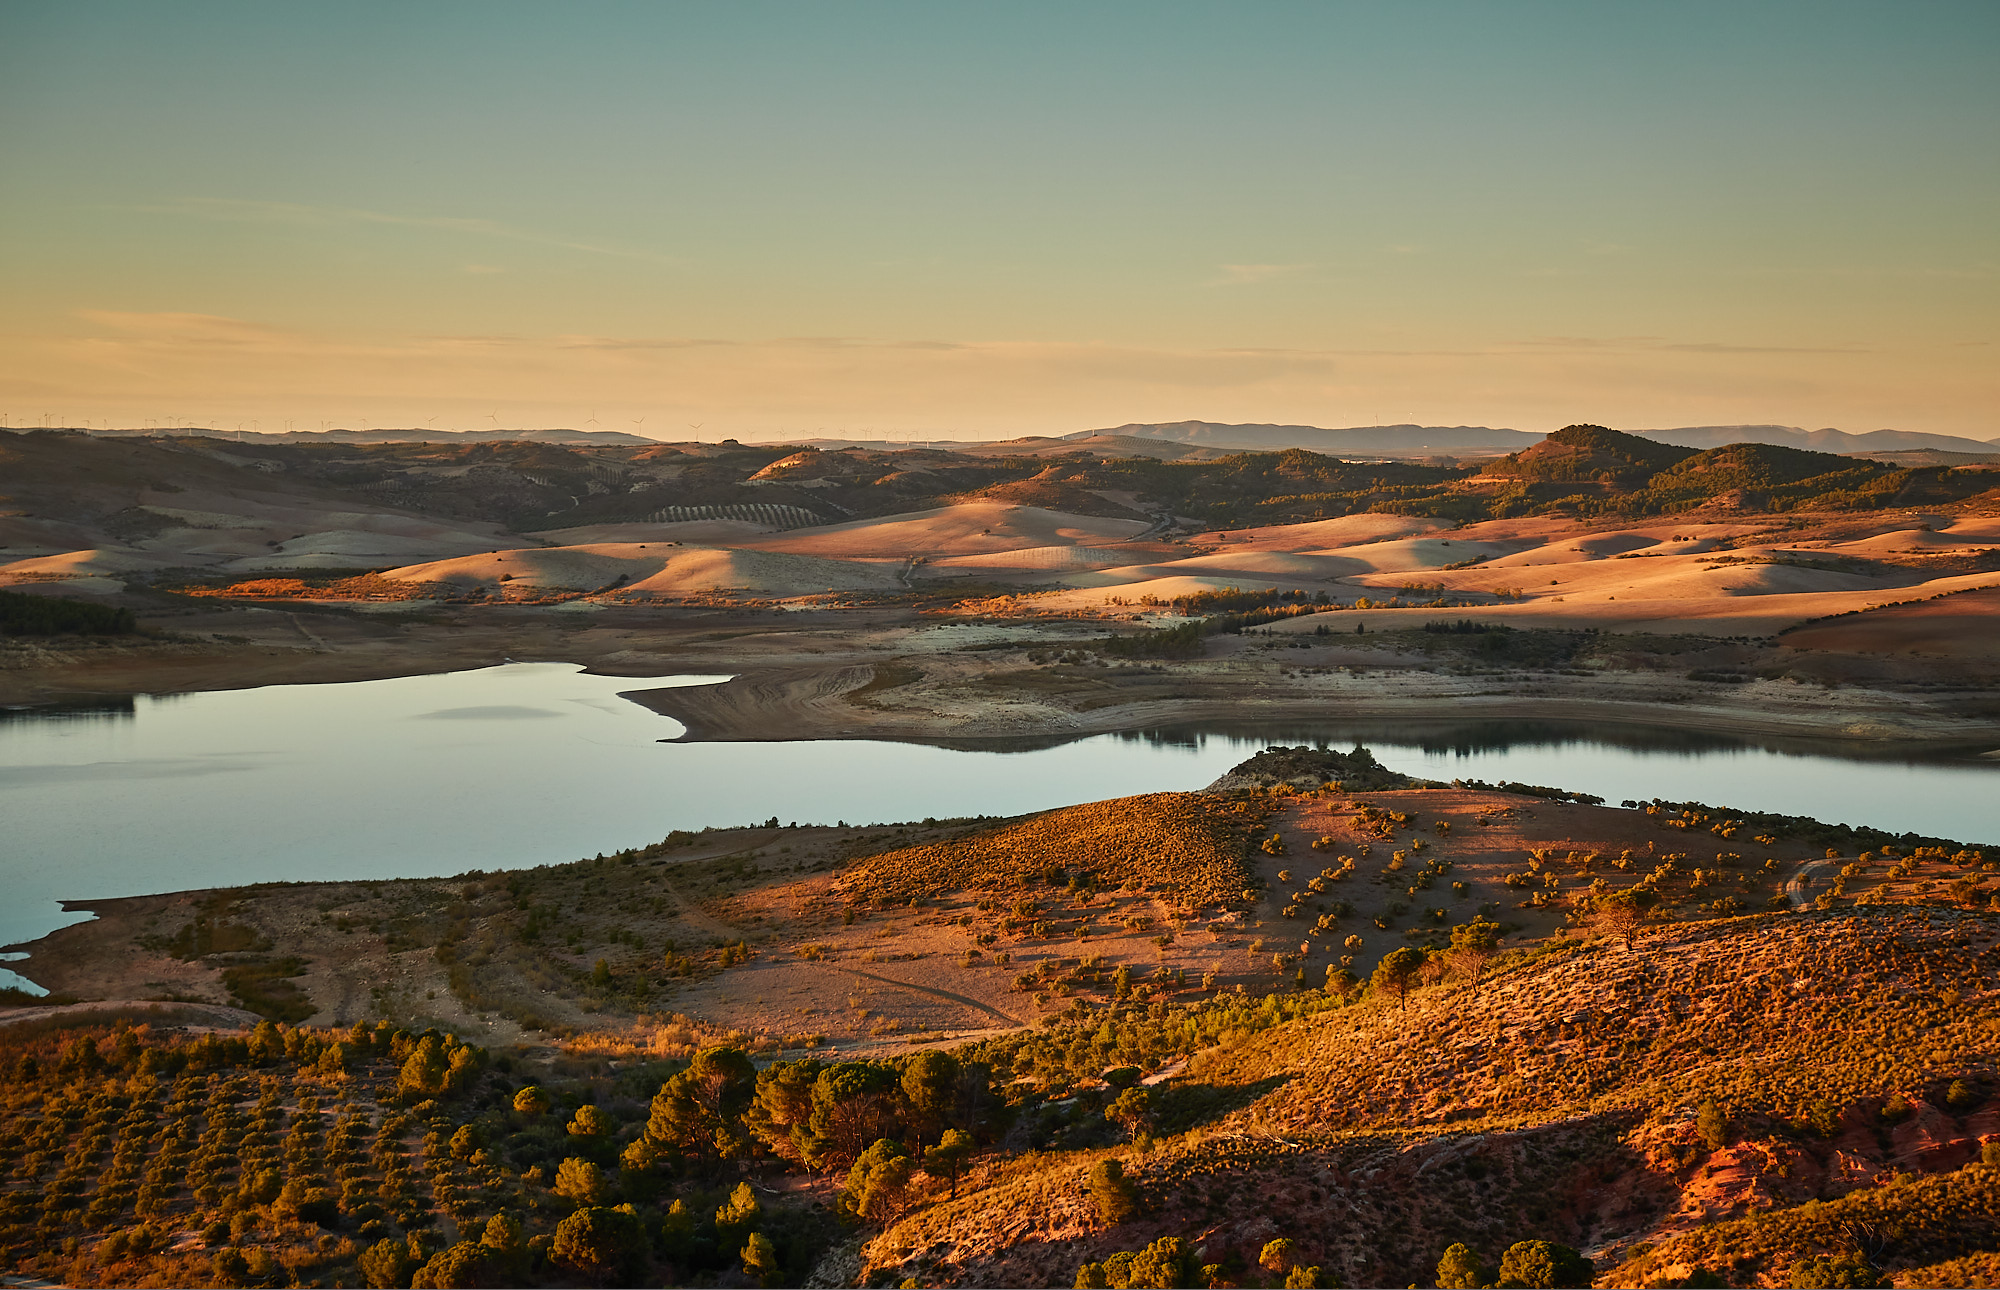 A landscape of barren plains, olive groves and a depleted reservoir at sunset